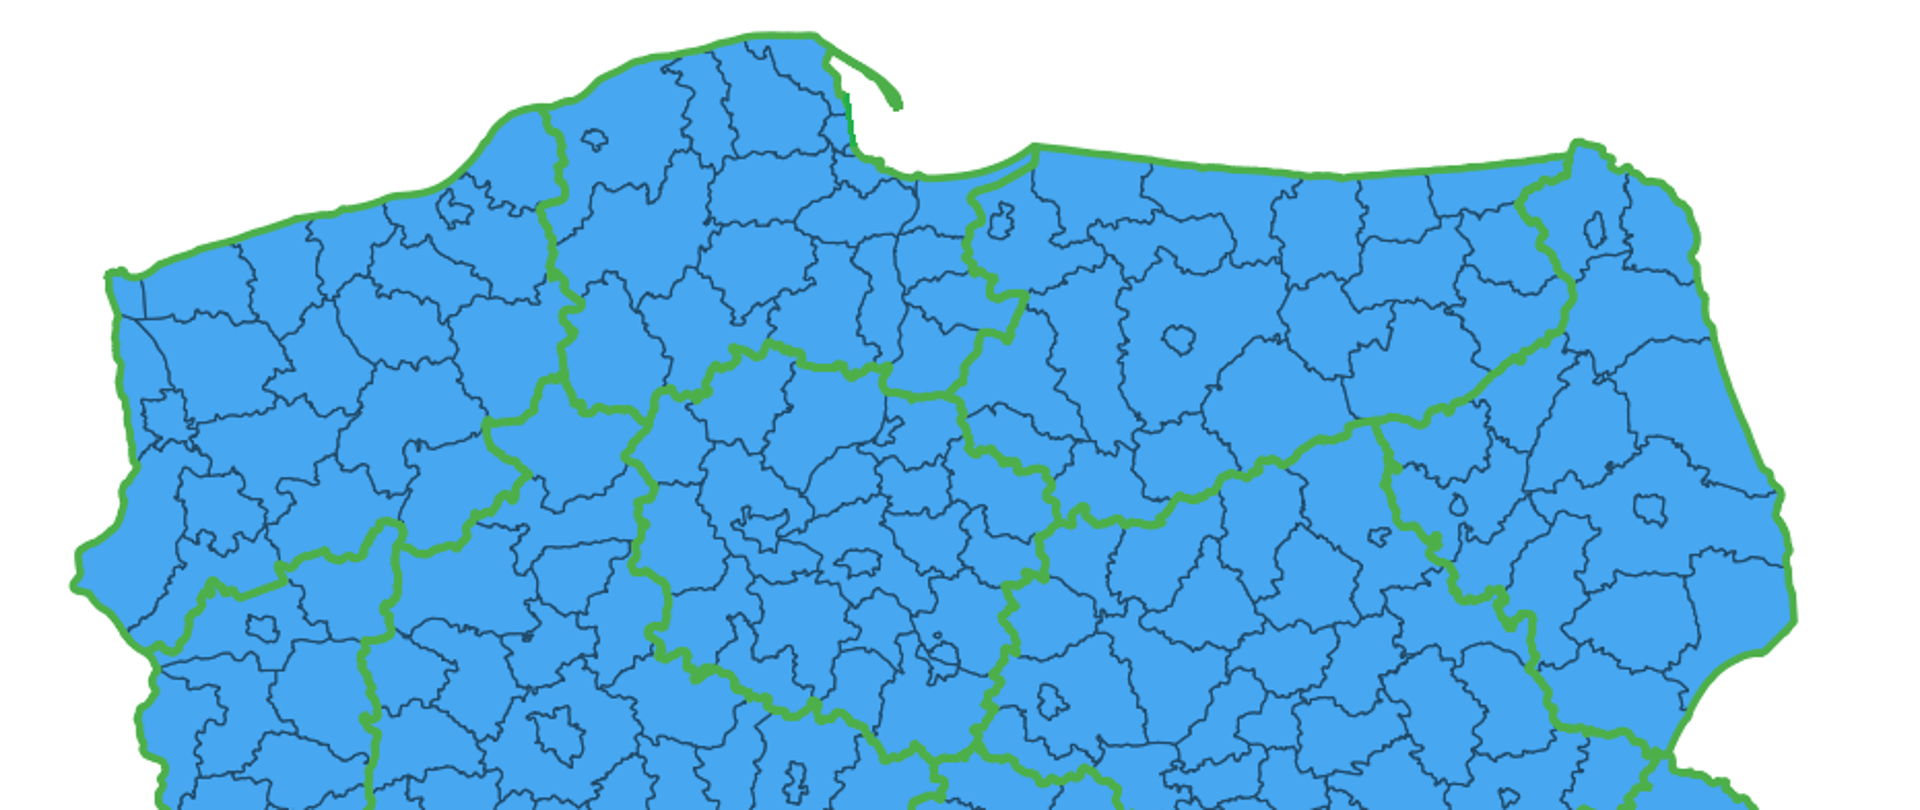 Ilustracja przedstawia mapę Polski z podziałem na powiaty, na której zaznaczone kolorem niebieskim są powiaty umożliwiające pobieranie pobieranie danych dotyczących geometrii działek i budynków.